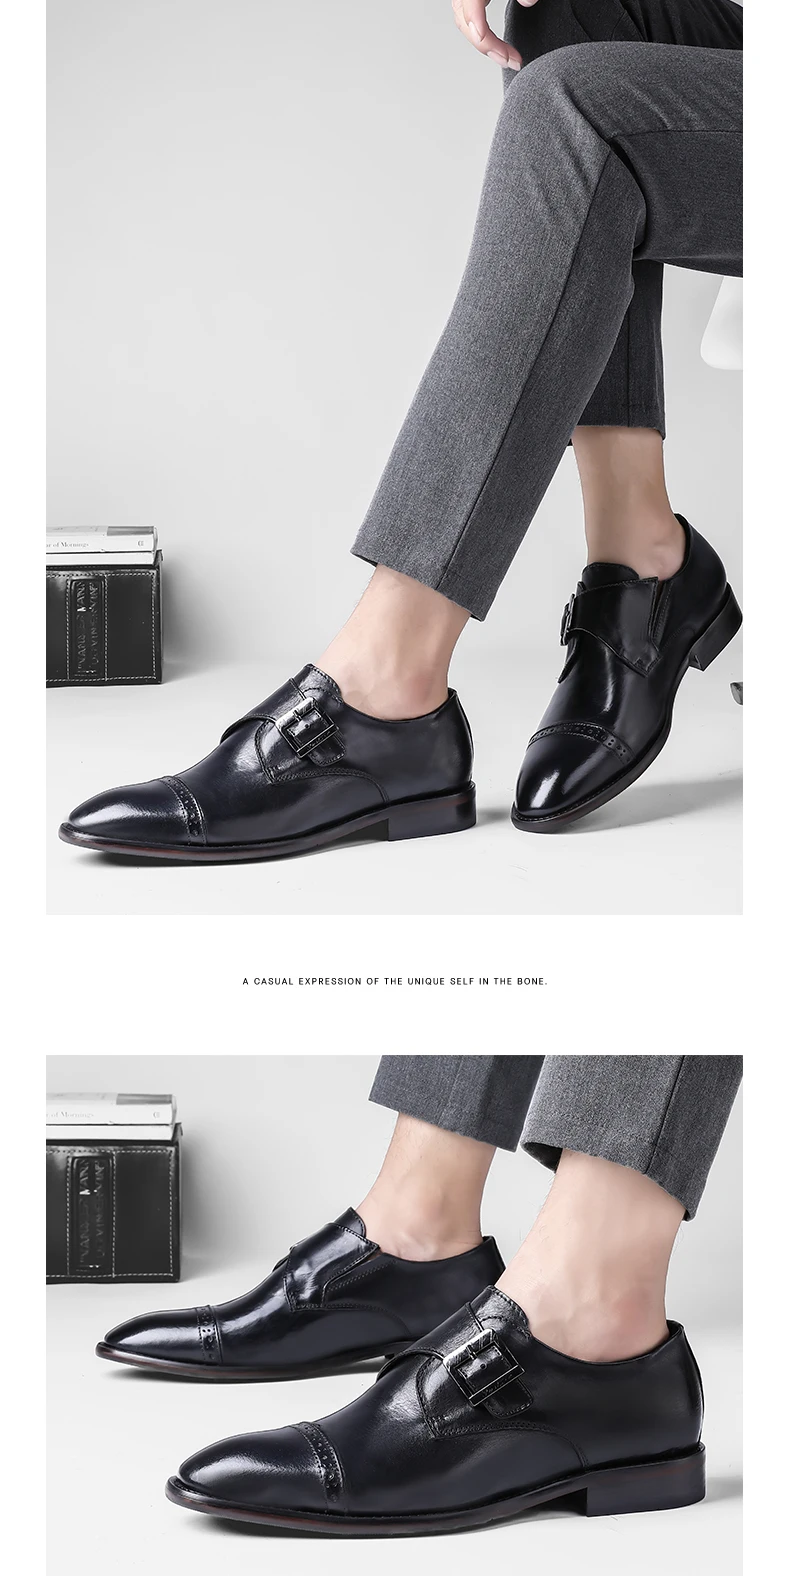 Обувь из натуральной кожи наивысшего качества в европейском стиле; Мужские модельные туфли; кожаная обувь ручной работы; мужские оксфорды с пряжкой на ремешке; деловая обувь